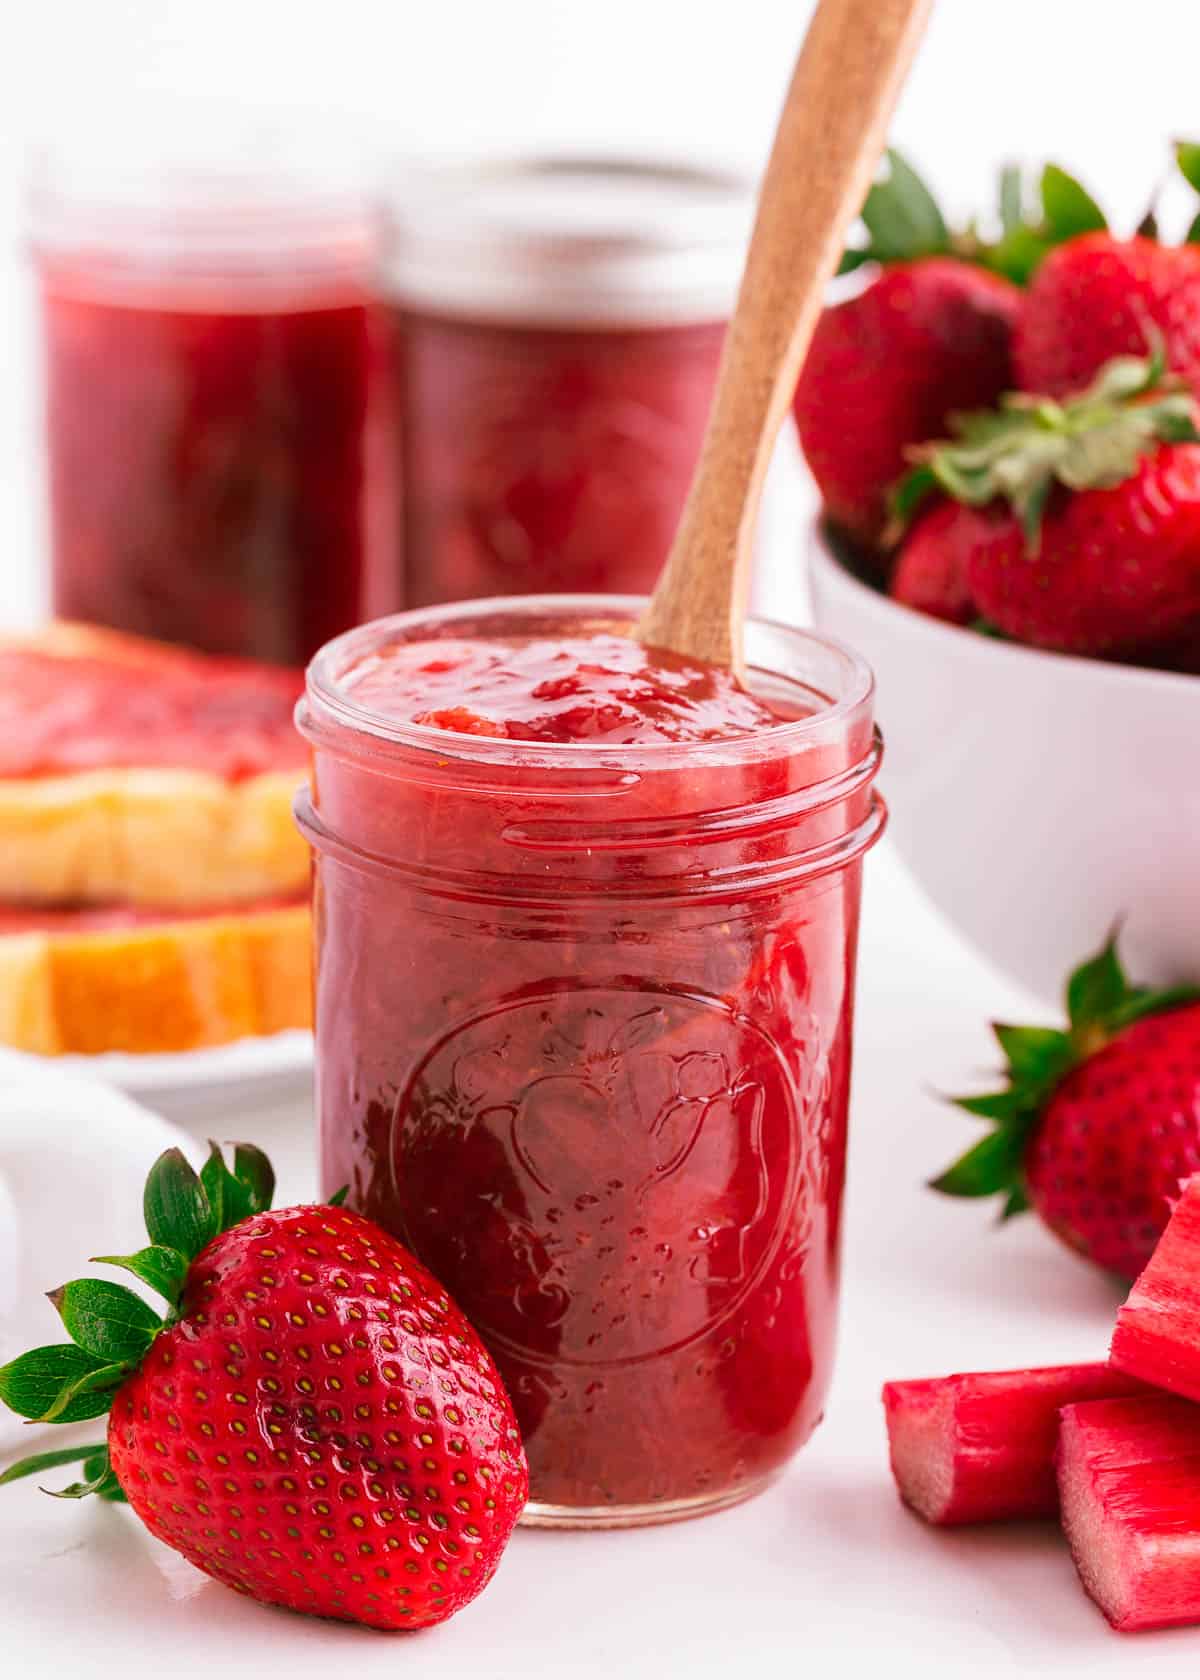 Strawberry rhubarb jam in a jar.